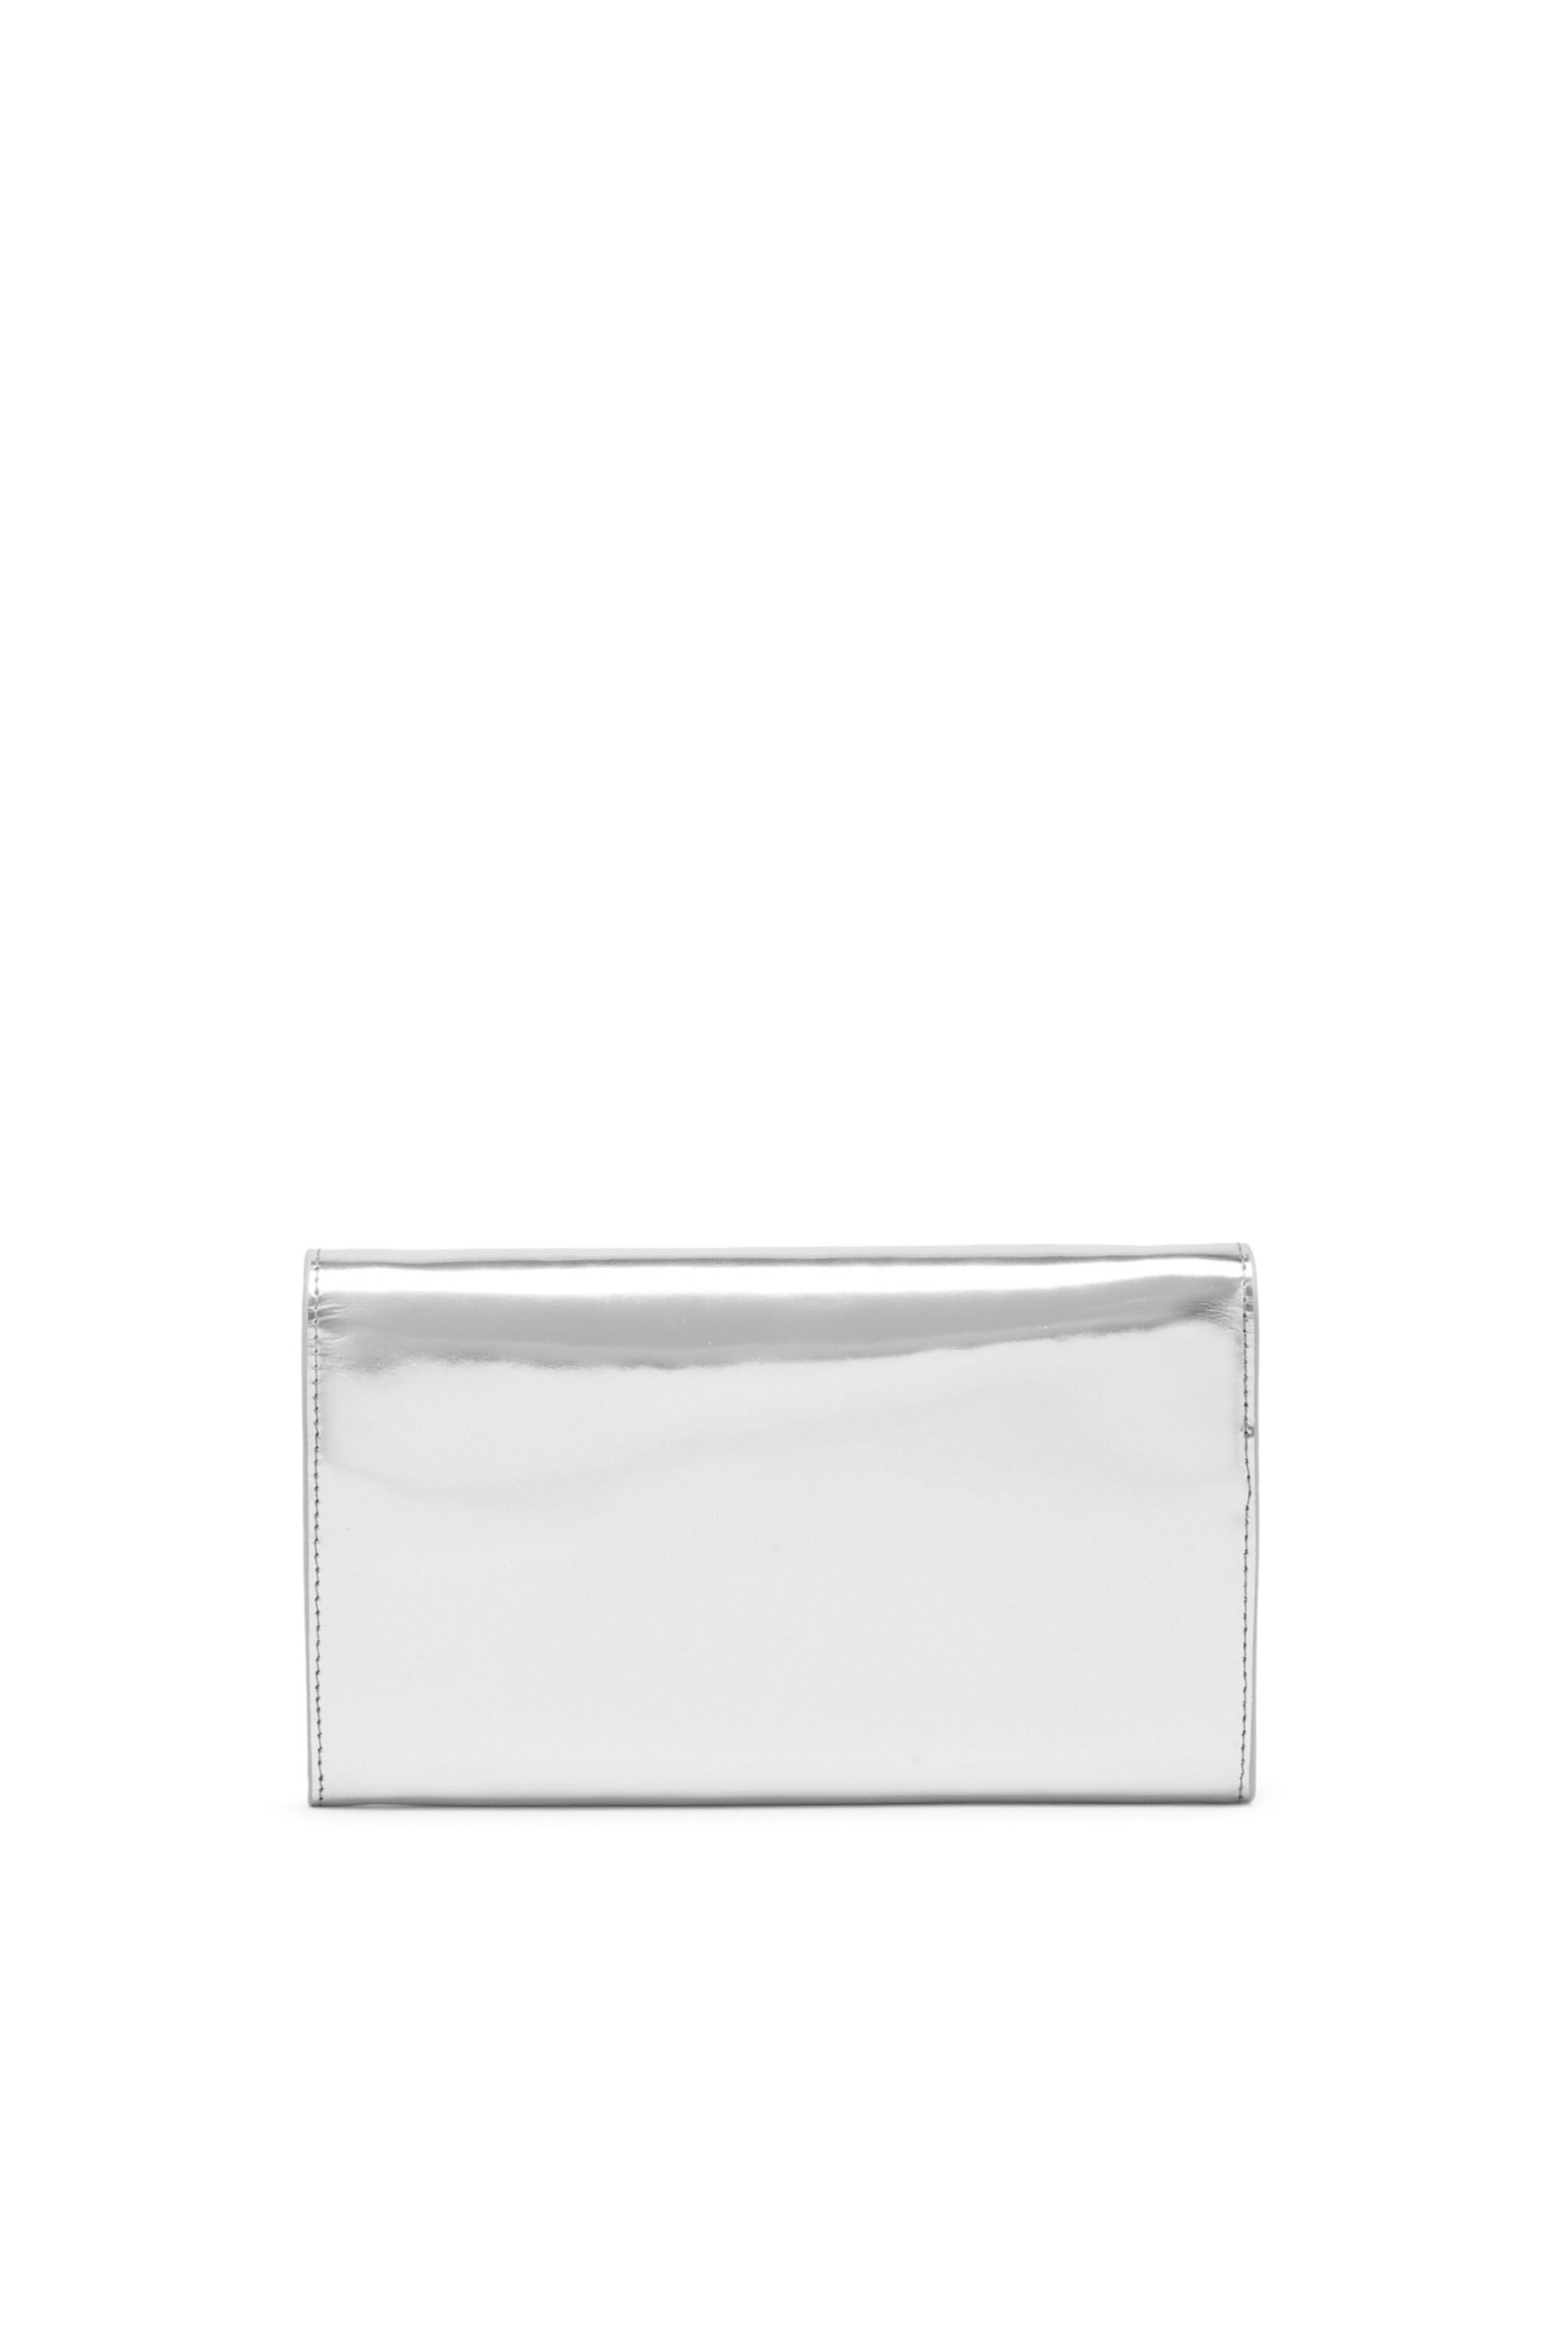 Diesel - LONG WALLET ZIP XXL, Woman Wallet purse in metallic leather in Silver - Image 2